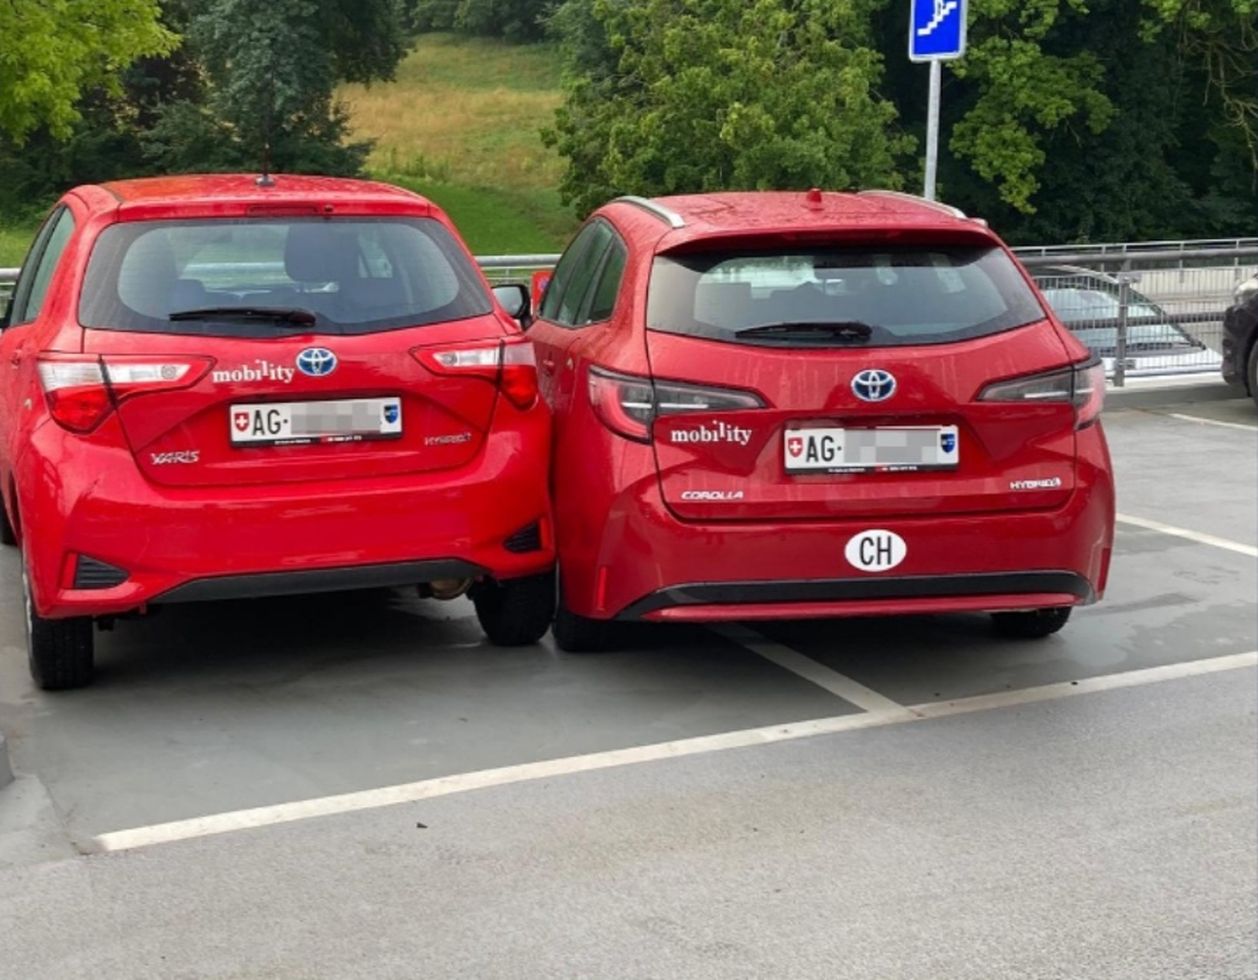 Parking in Switzerland